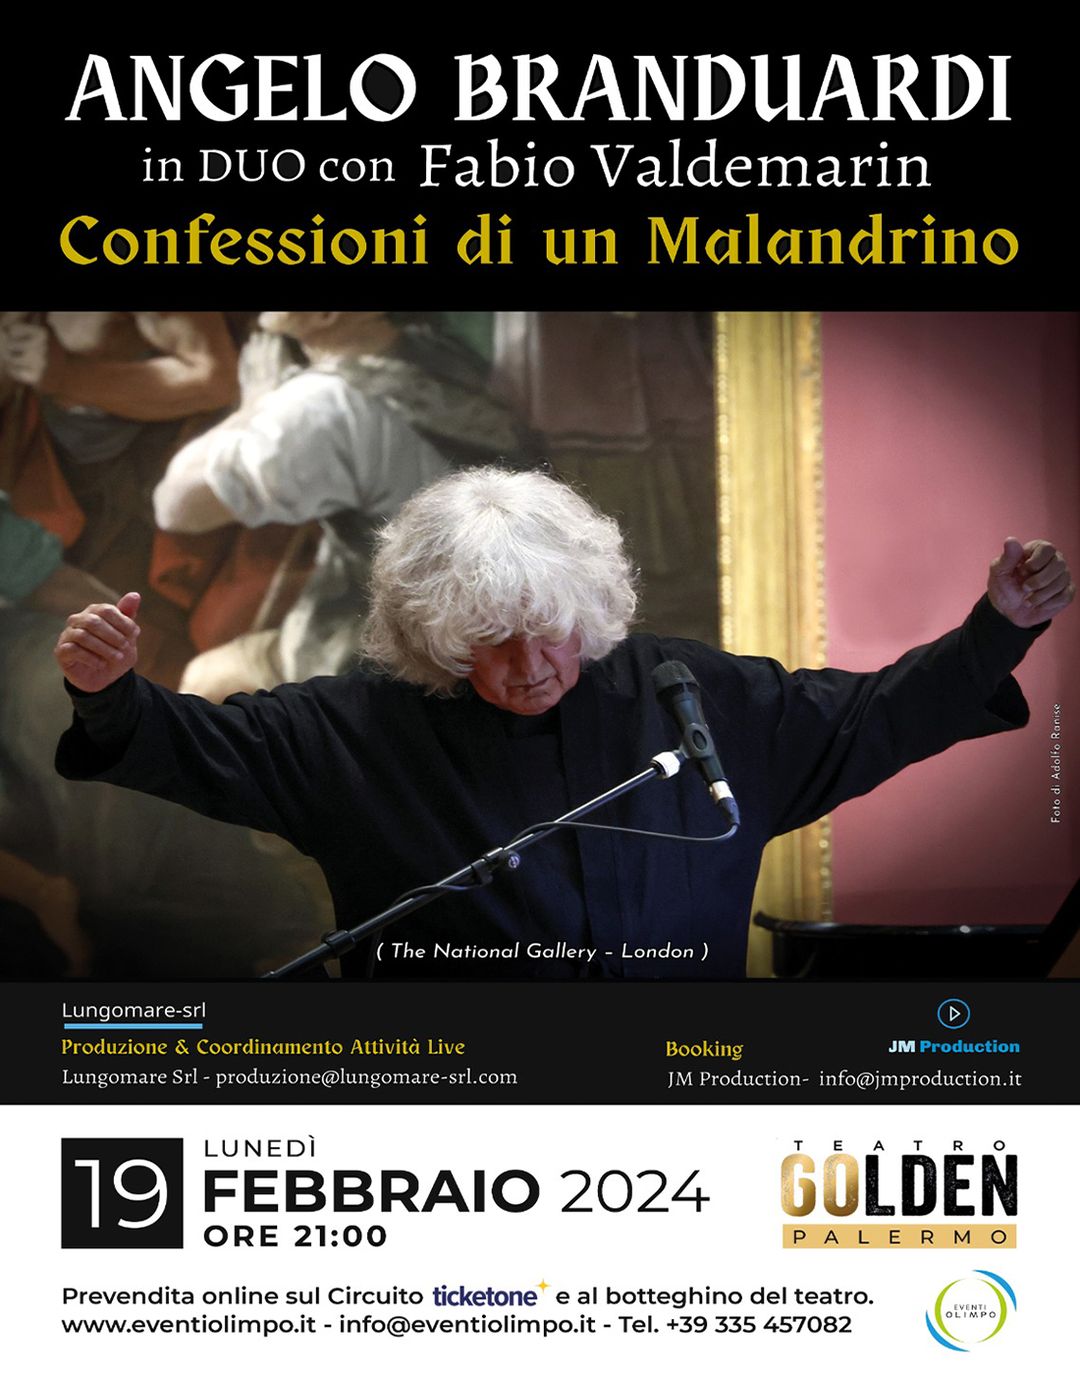 ''confessioni di un malandrino'', al teatro golden di palermo il concerto di angelo branduardi con fabio valdemarin